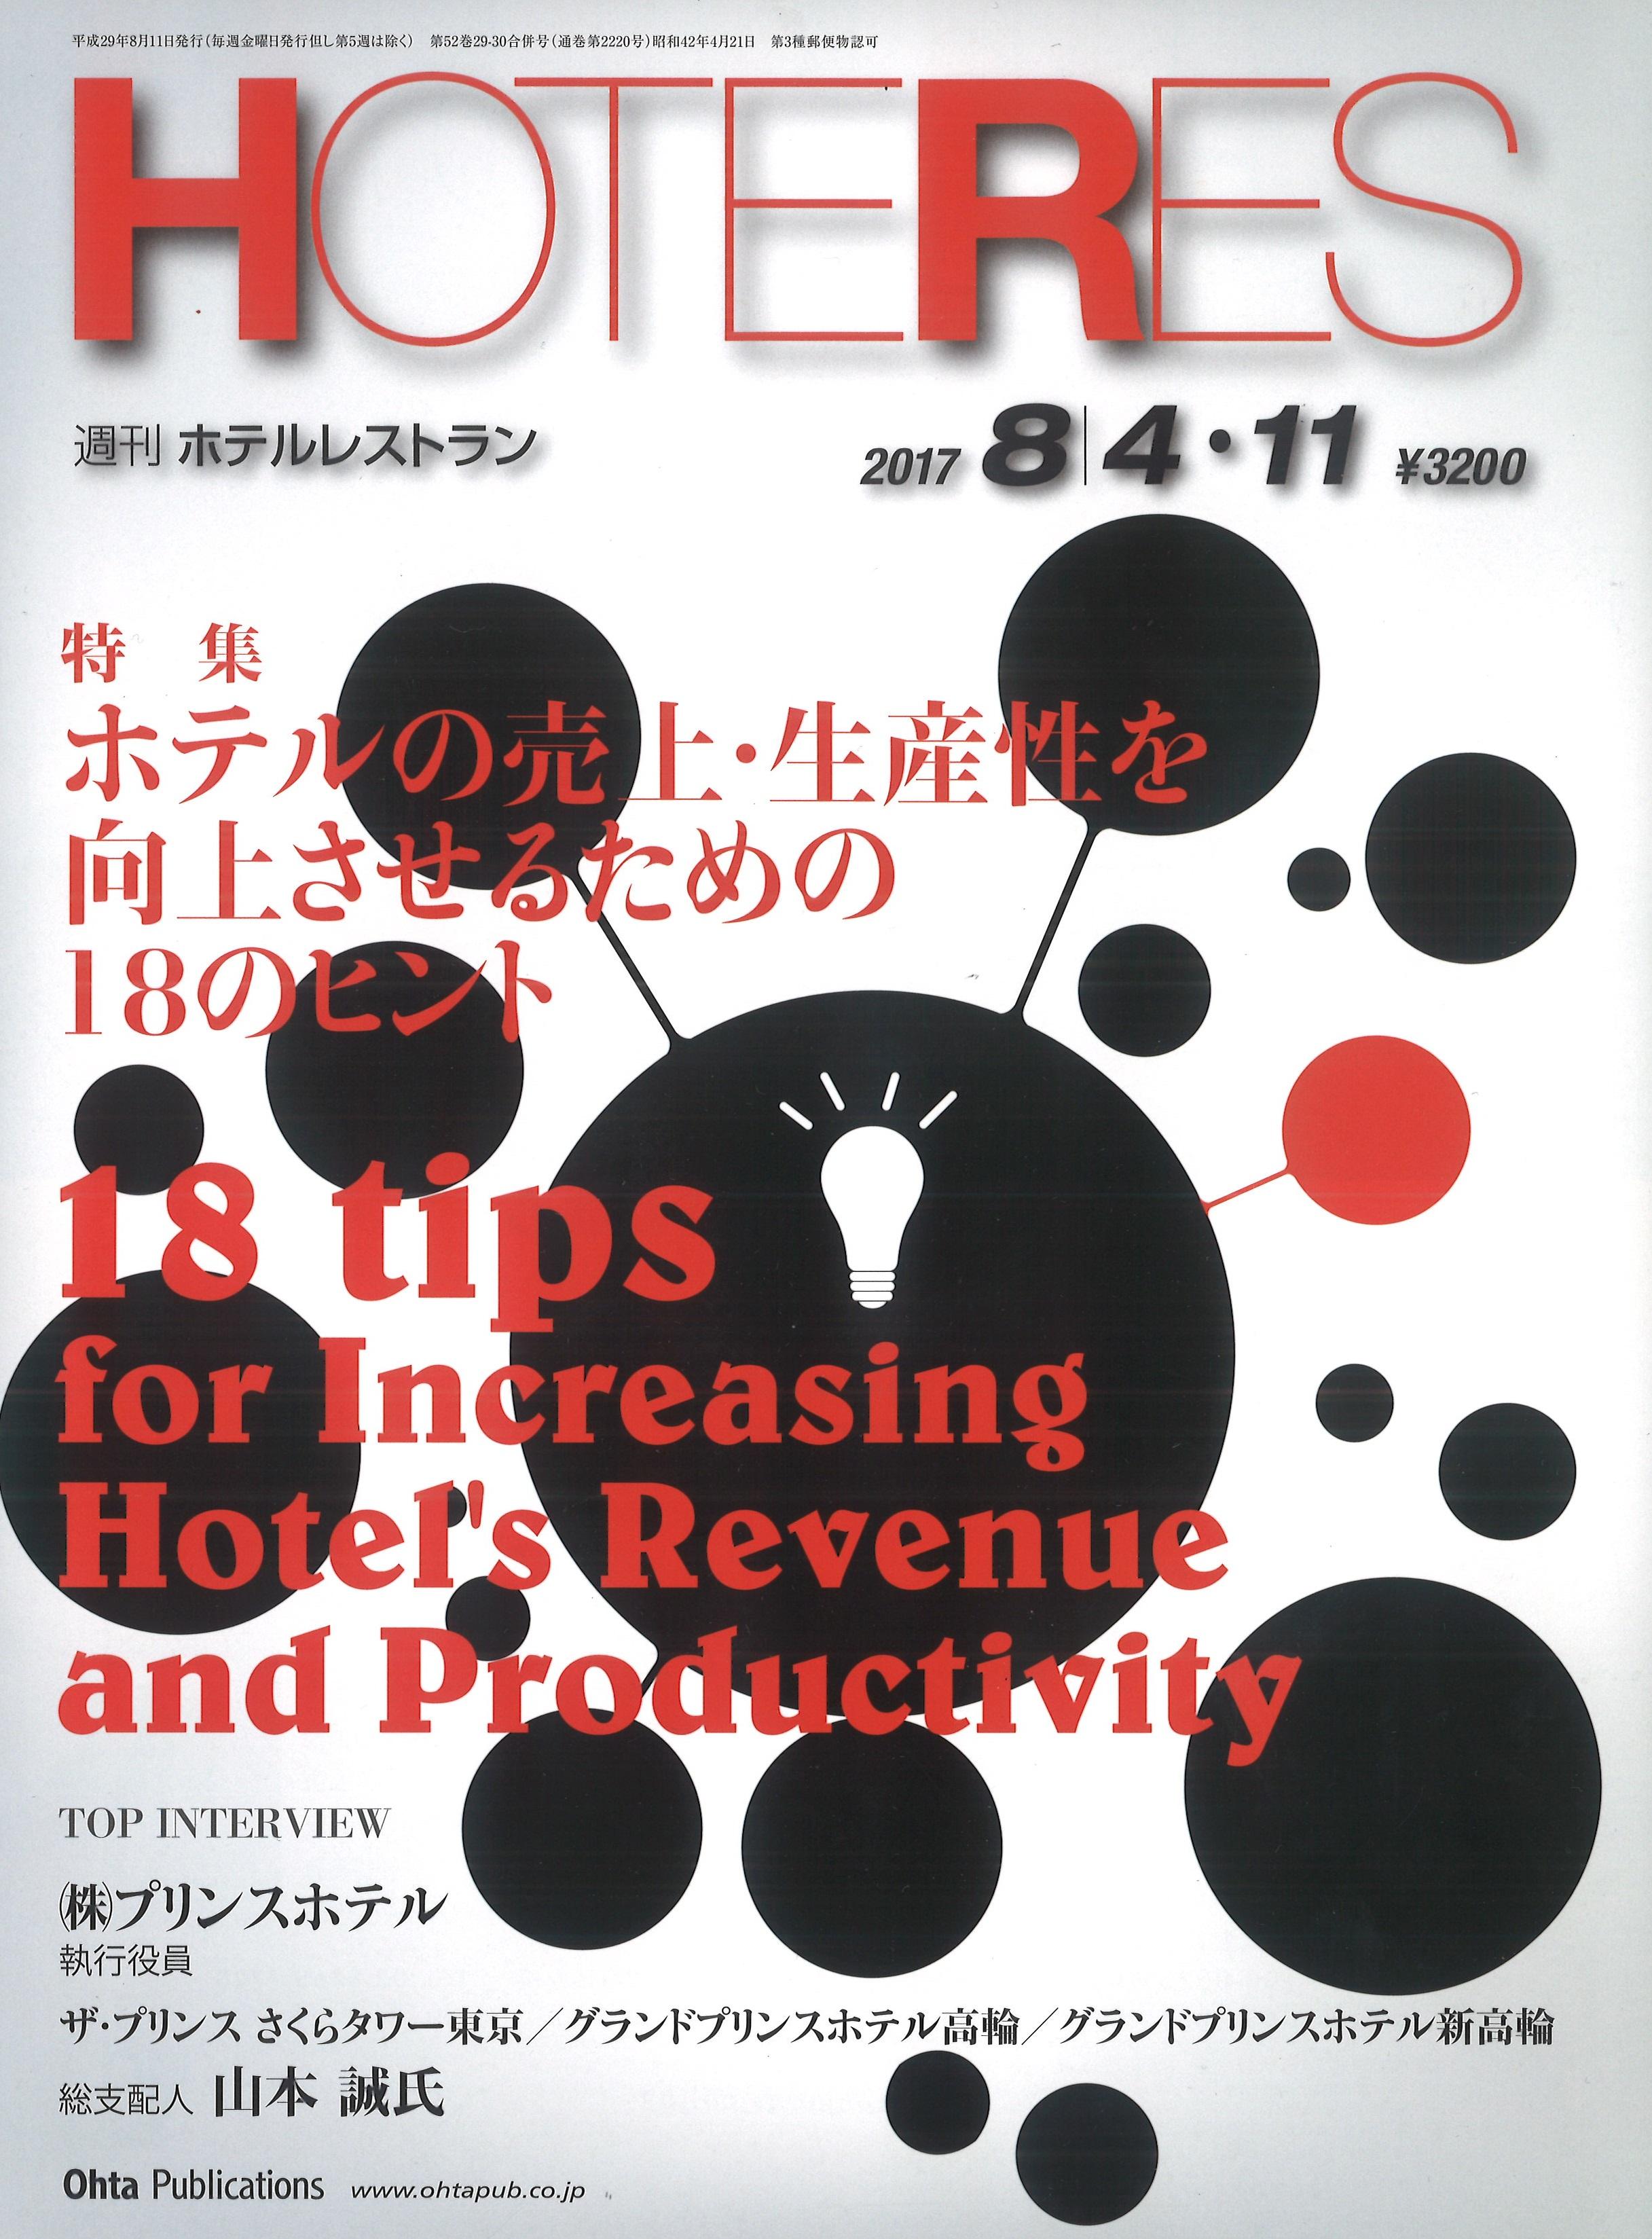 『週刊 ホテルレストラン』に、当社代表取締役社長・佐藤裕久の連載が掲載されました。